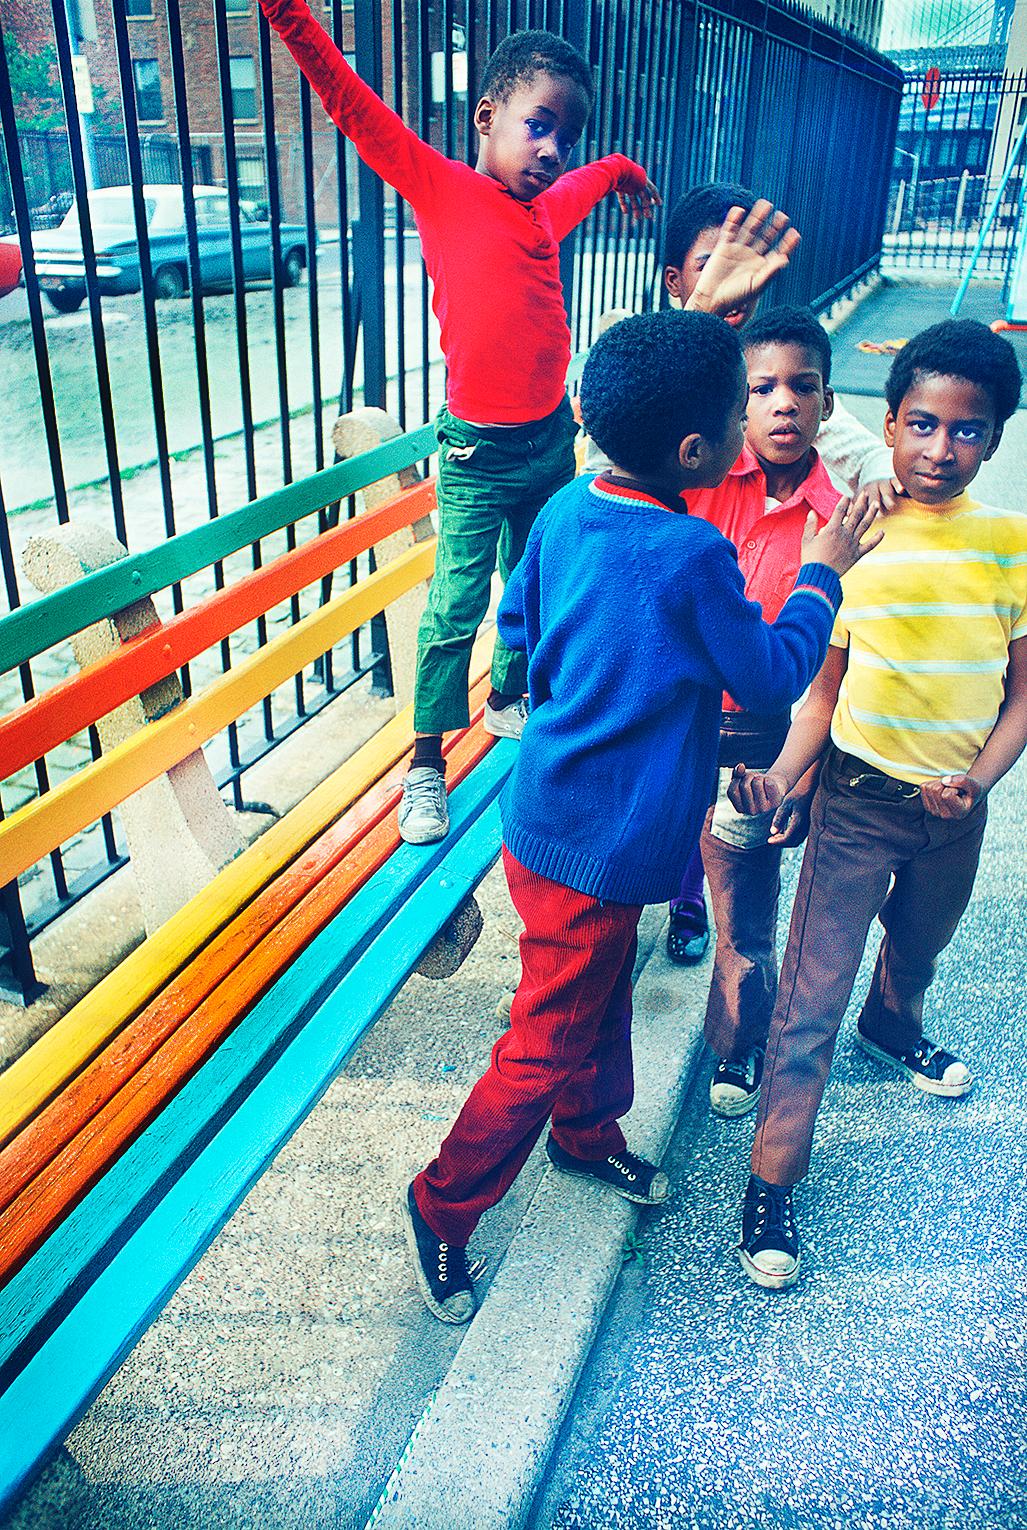 Les enfants avec des vêtements colorés dans le parc de Brooklyn - Pionnier de la photographie couleur - Photograph de Mitchell Funk